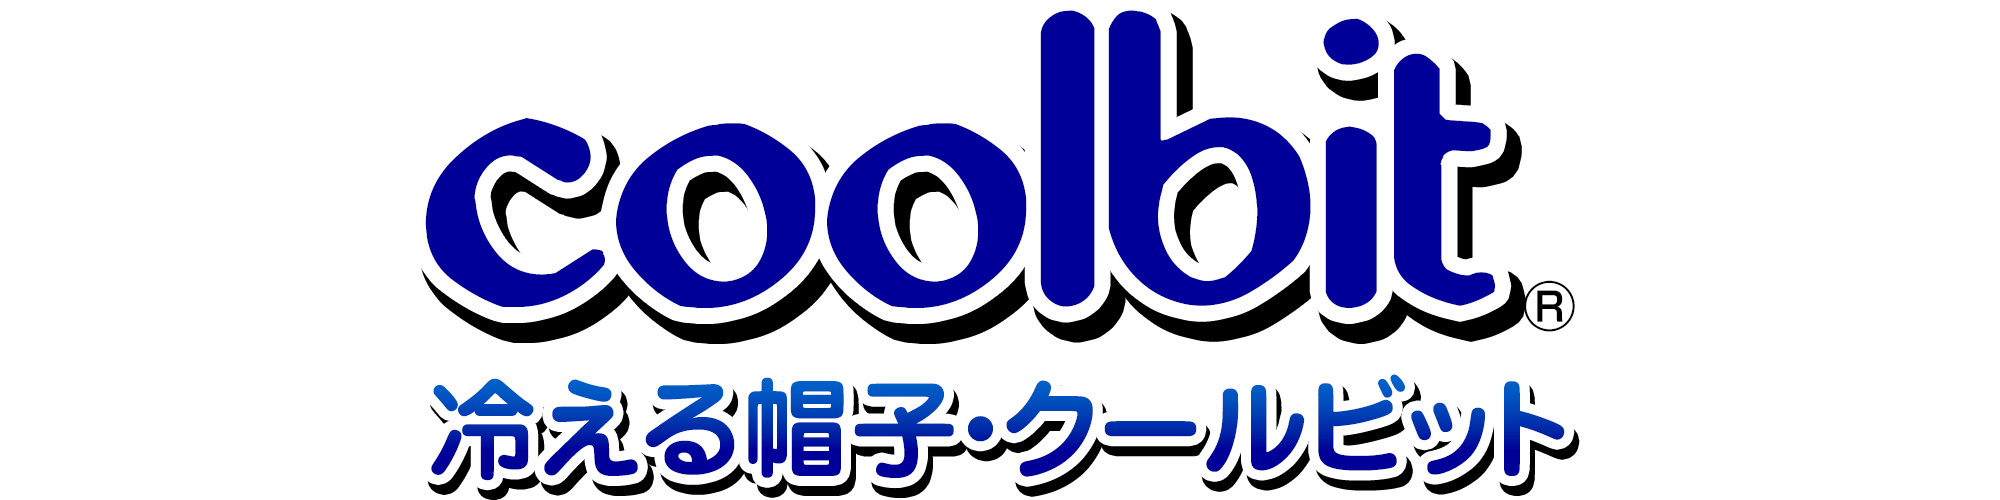 冷える帽子 クールビット coolbit 公式販売サイト ショップ